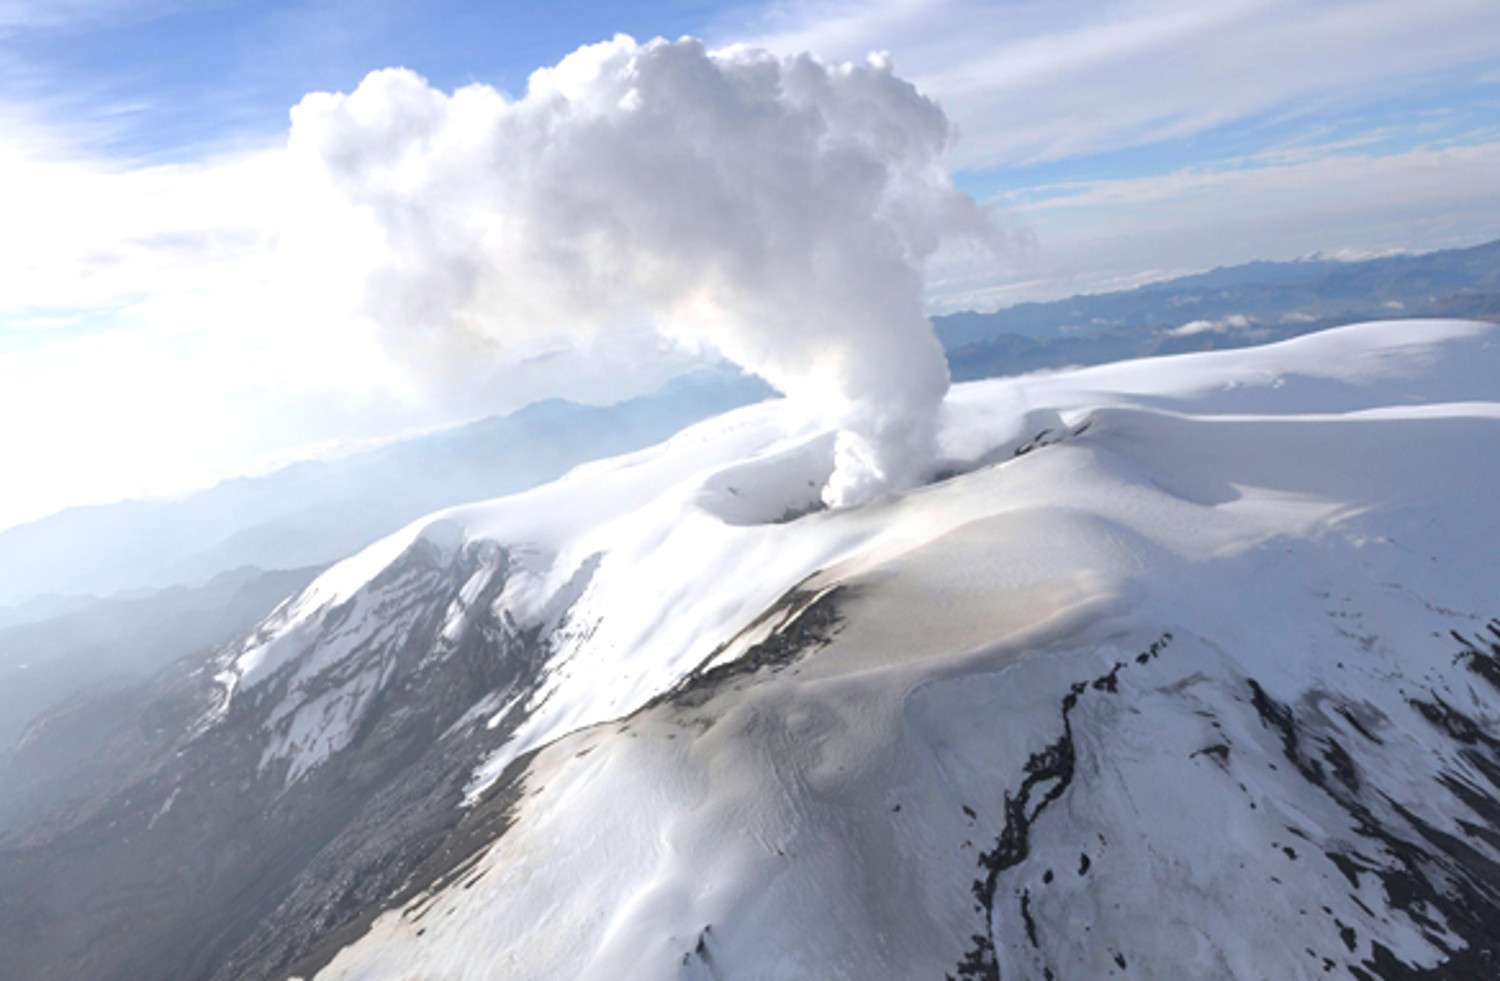 El Volcan Nevado del Ruiz se encuentra en alerta amarilla desde 1985, con actividad volcánica recurrente y expulsión de humo y ceniza (Sismológico Colombiano)